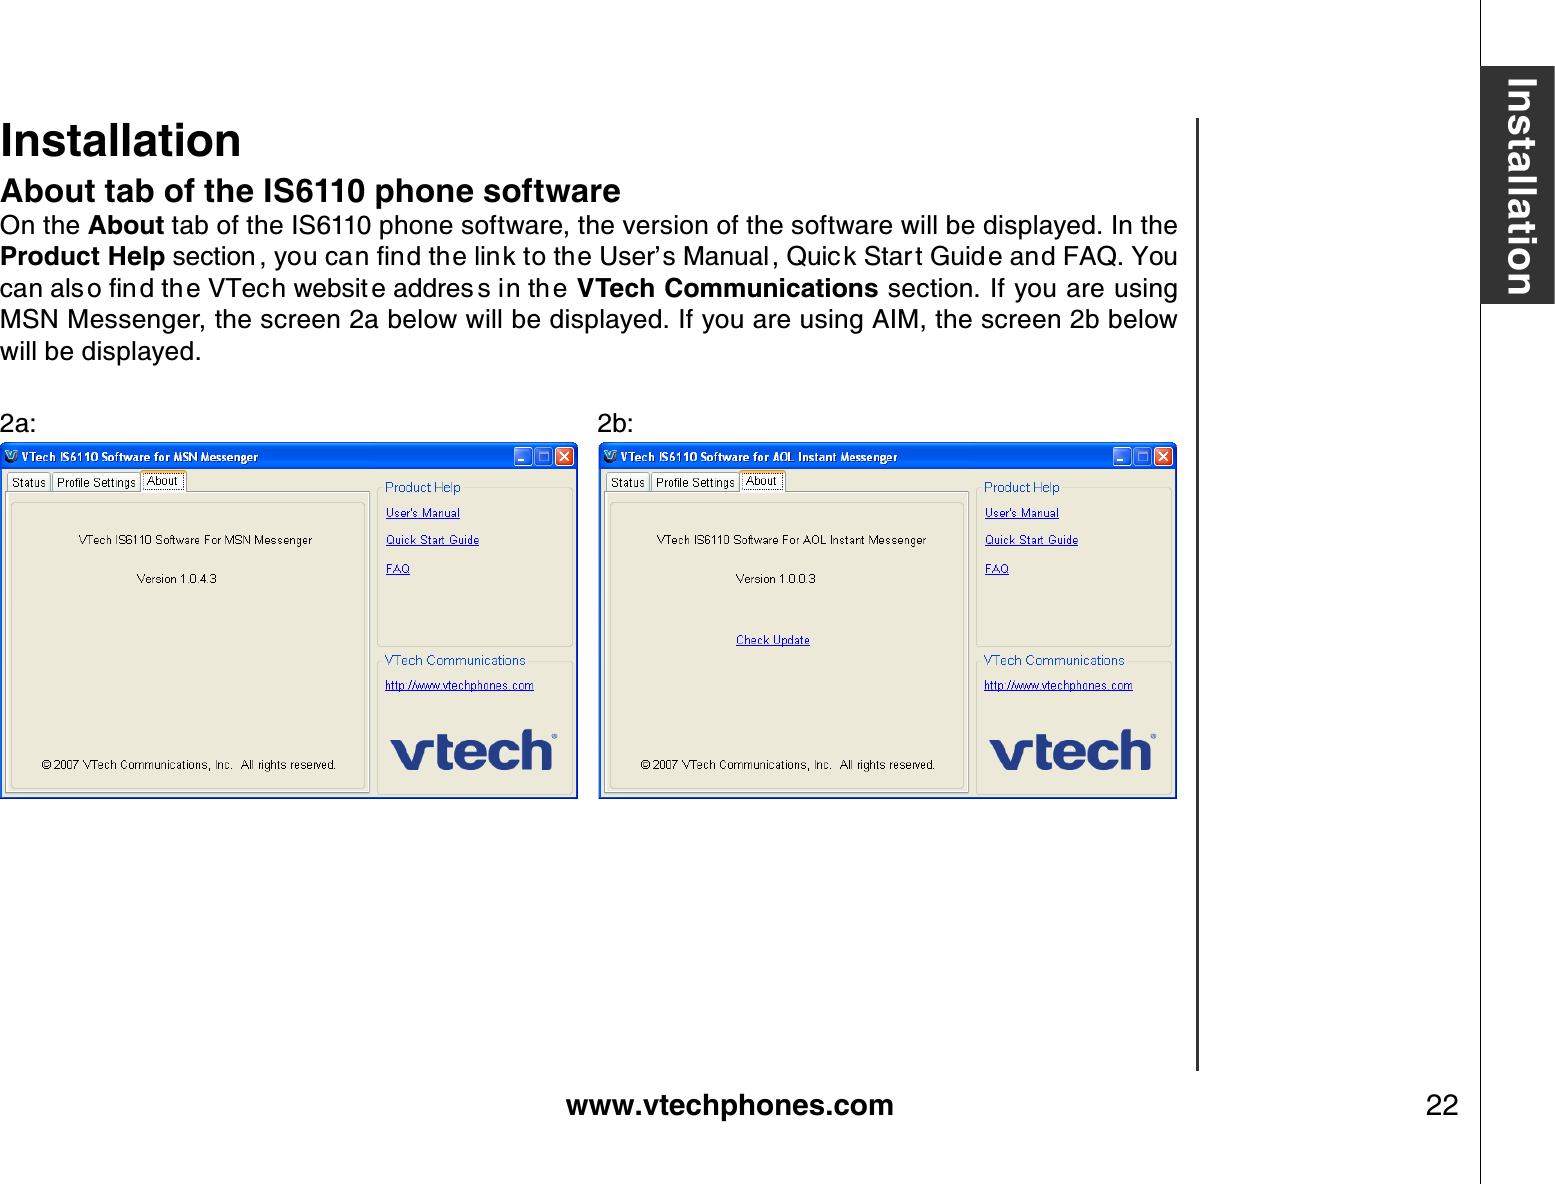 www.vtechphones.com 22InstallationAbout tab of the IS6110 phone softwareOn the About tab of the IS6110 phone software, the version of the software will be displayed. In the Product HelpUGEVKQP [QWECPſPFVJGNKPMVQVJG7UGTŏU/CPWCN 3WKEM5VCT V)WKF GCPF(#3;QWECPCNU QſPFVJ G86GEJYGDUKV GCFFTGU UKPVJGVTech Communications section. If you are using MSN Messenger, the screen 2a below will be displayed. If you are using AIM, the screen 2b below will be displayed.2a:                         2b:      Installation